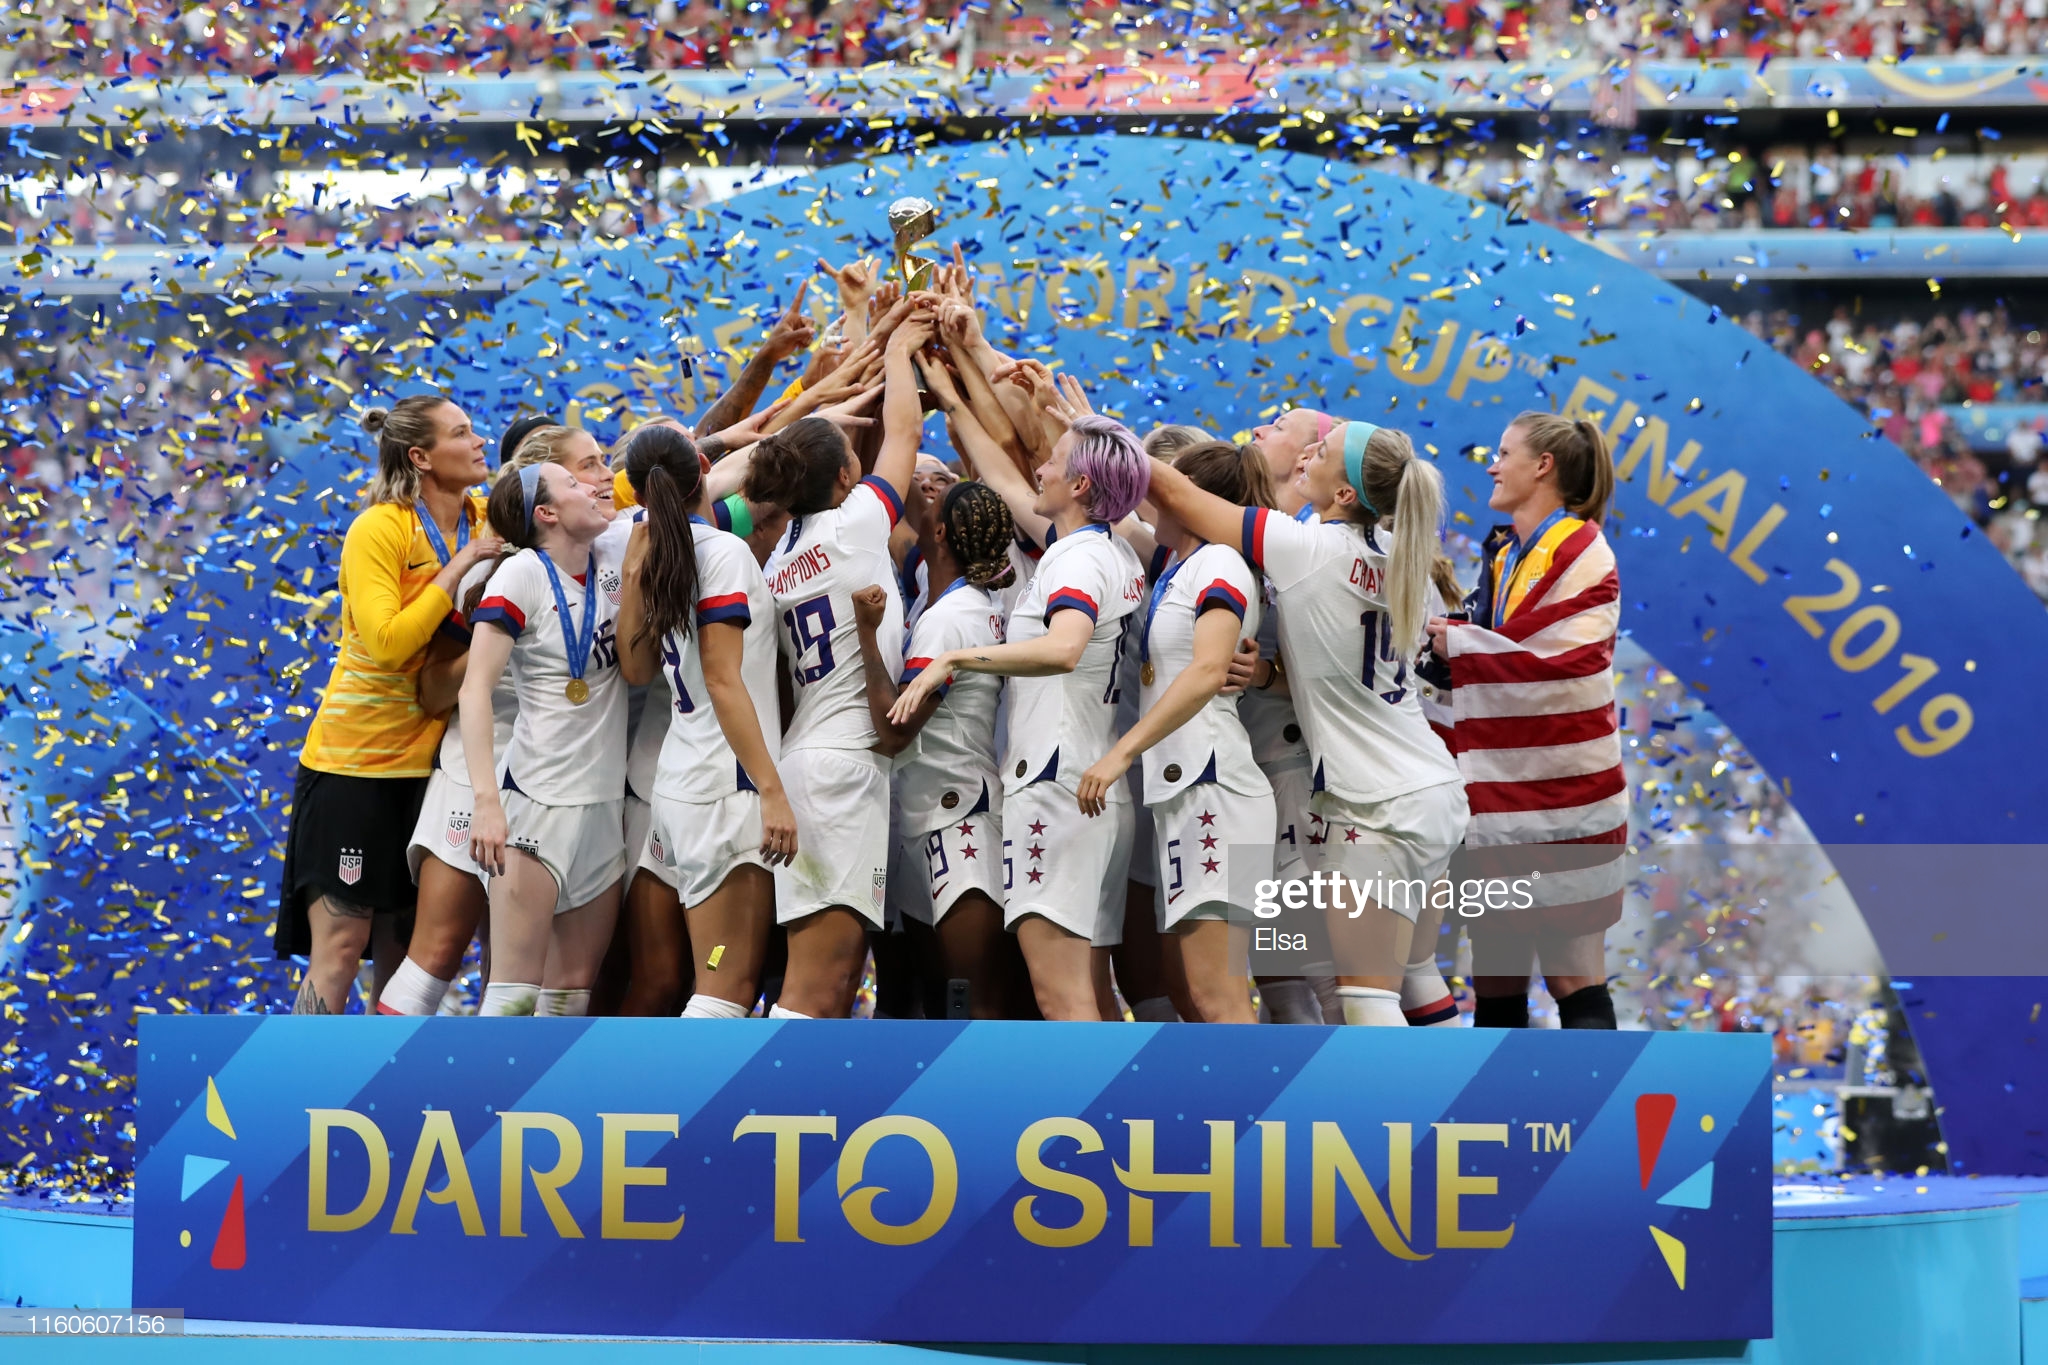 تفاوت فاحش پاداش تیم ملی فوتبال زنان آمریکا با قهرمان جام جهانی 2018 مردان!